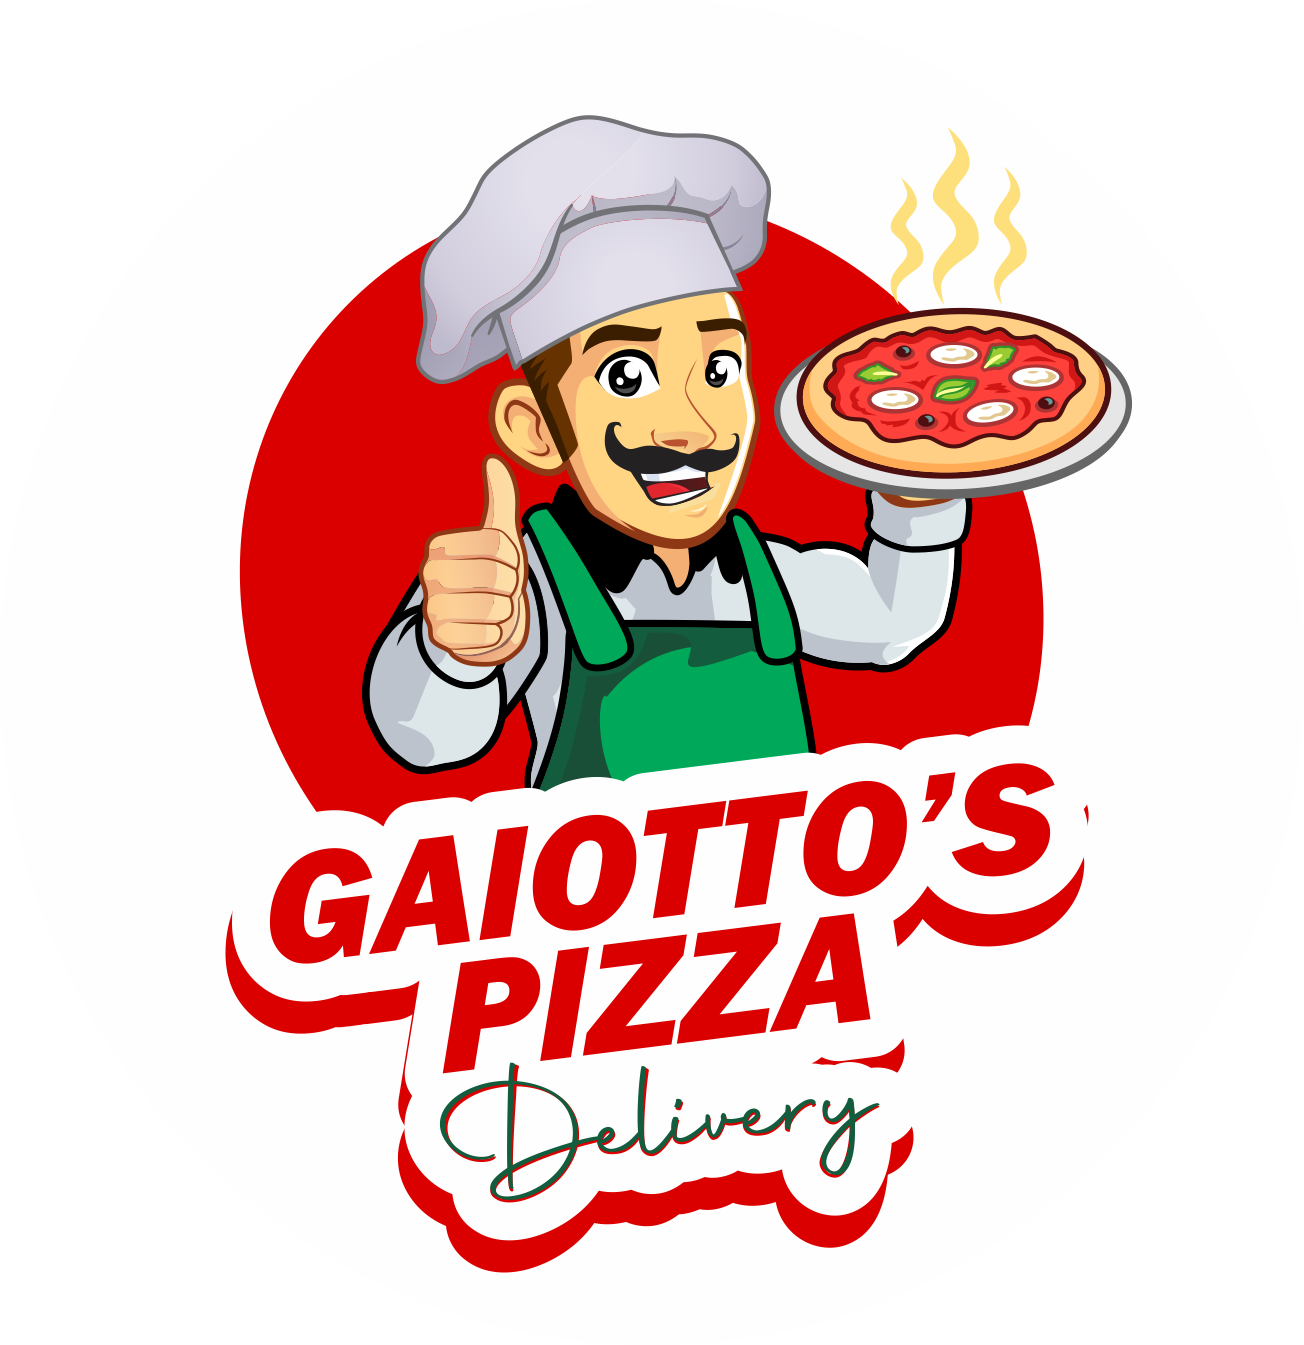 Gaiotto's Pizza